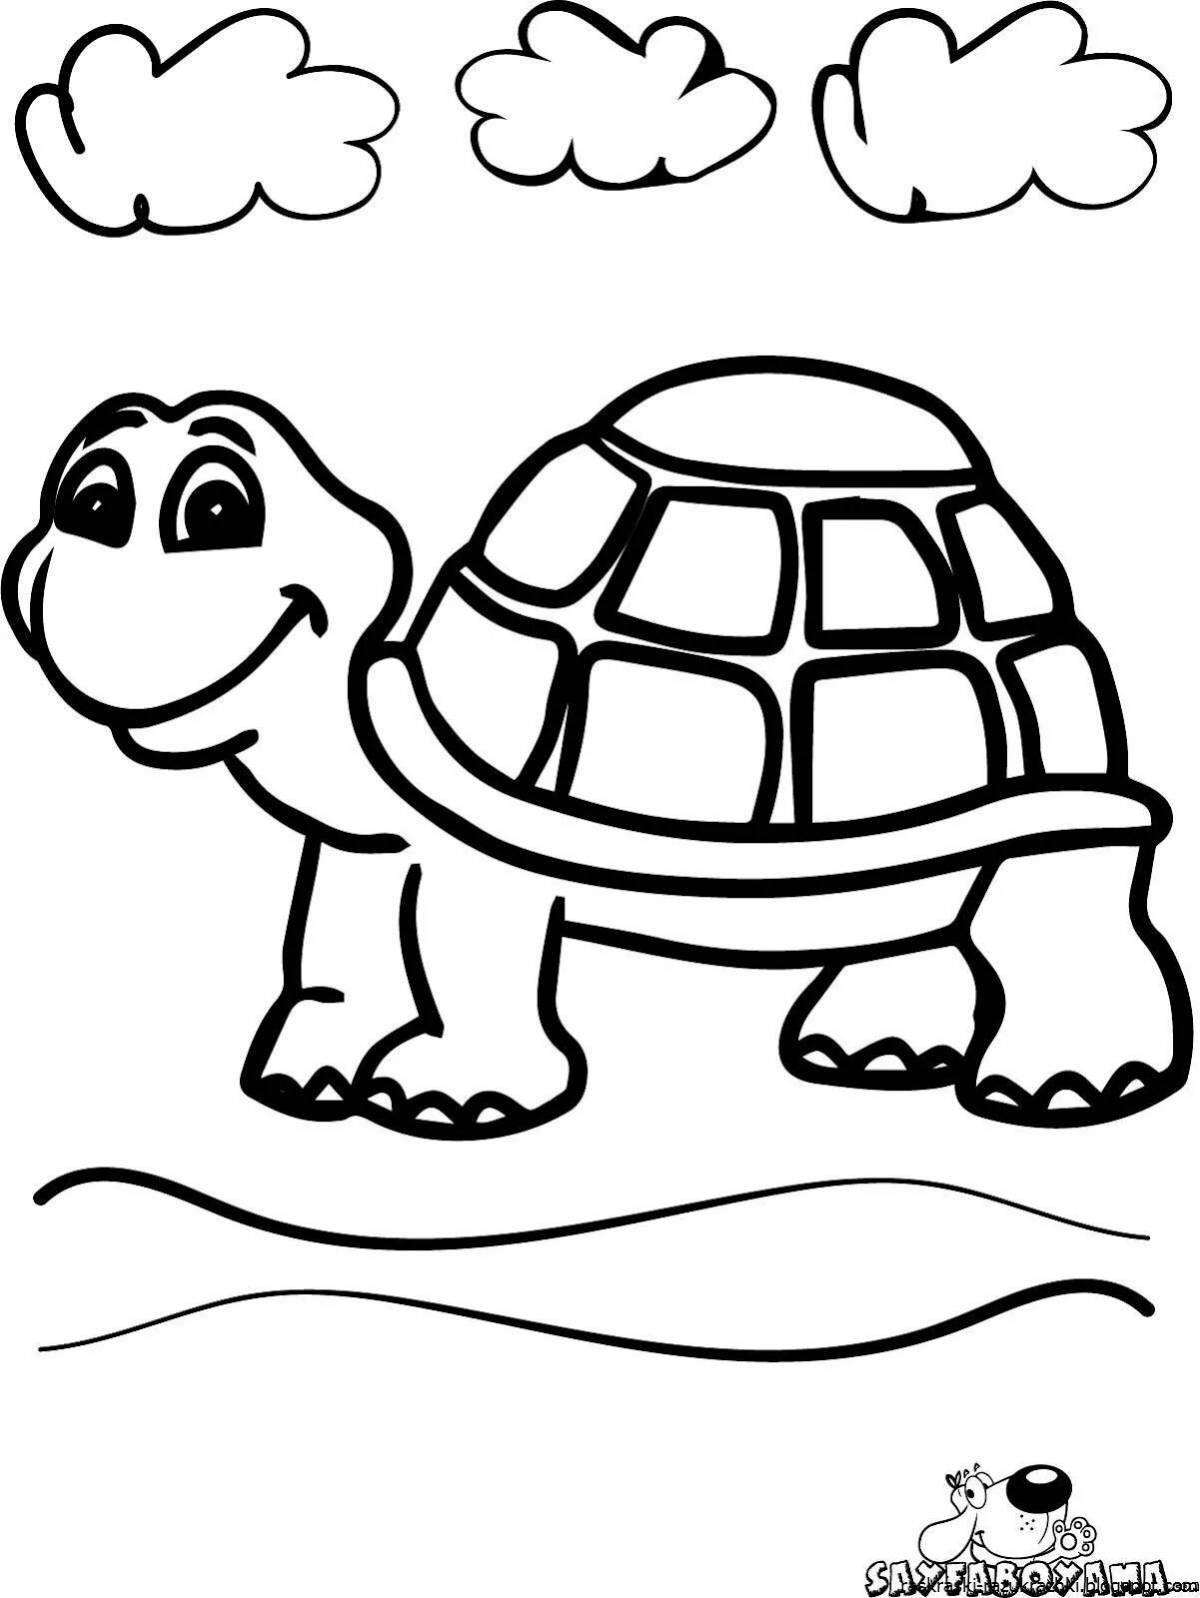 Красочная черепаха-раскраска для детей